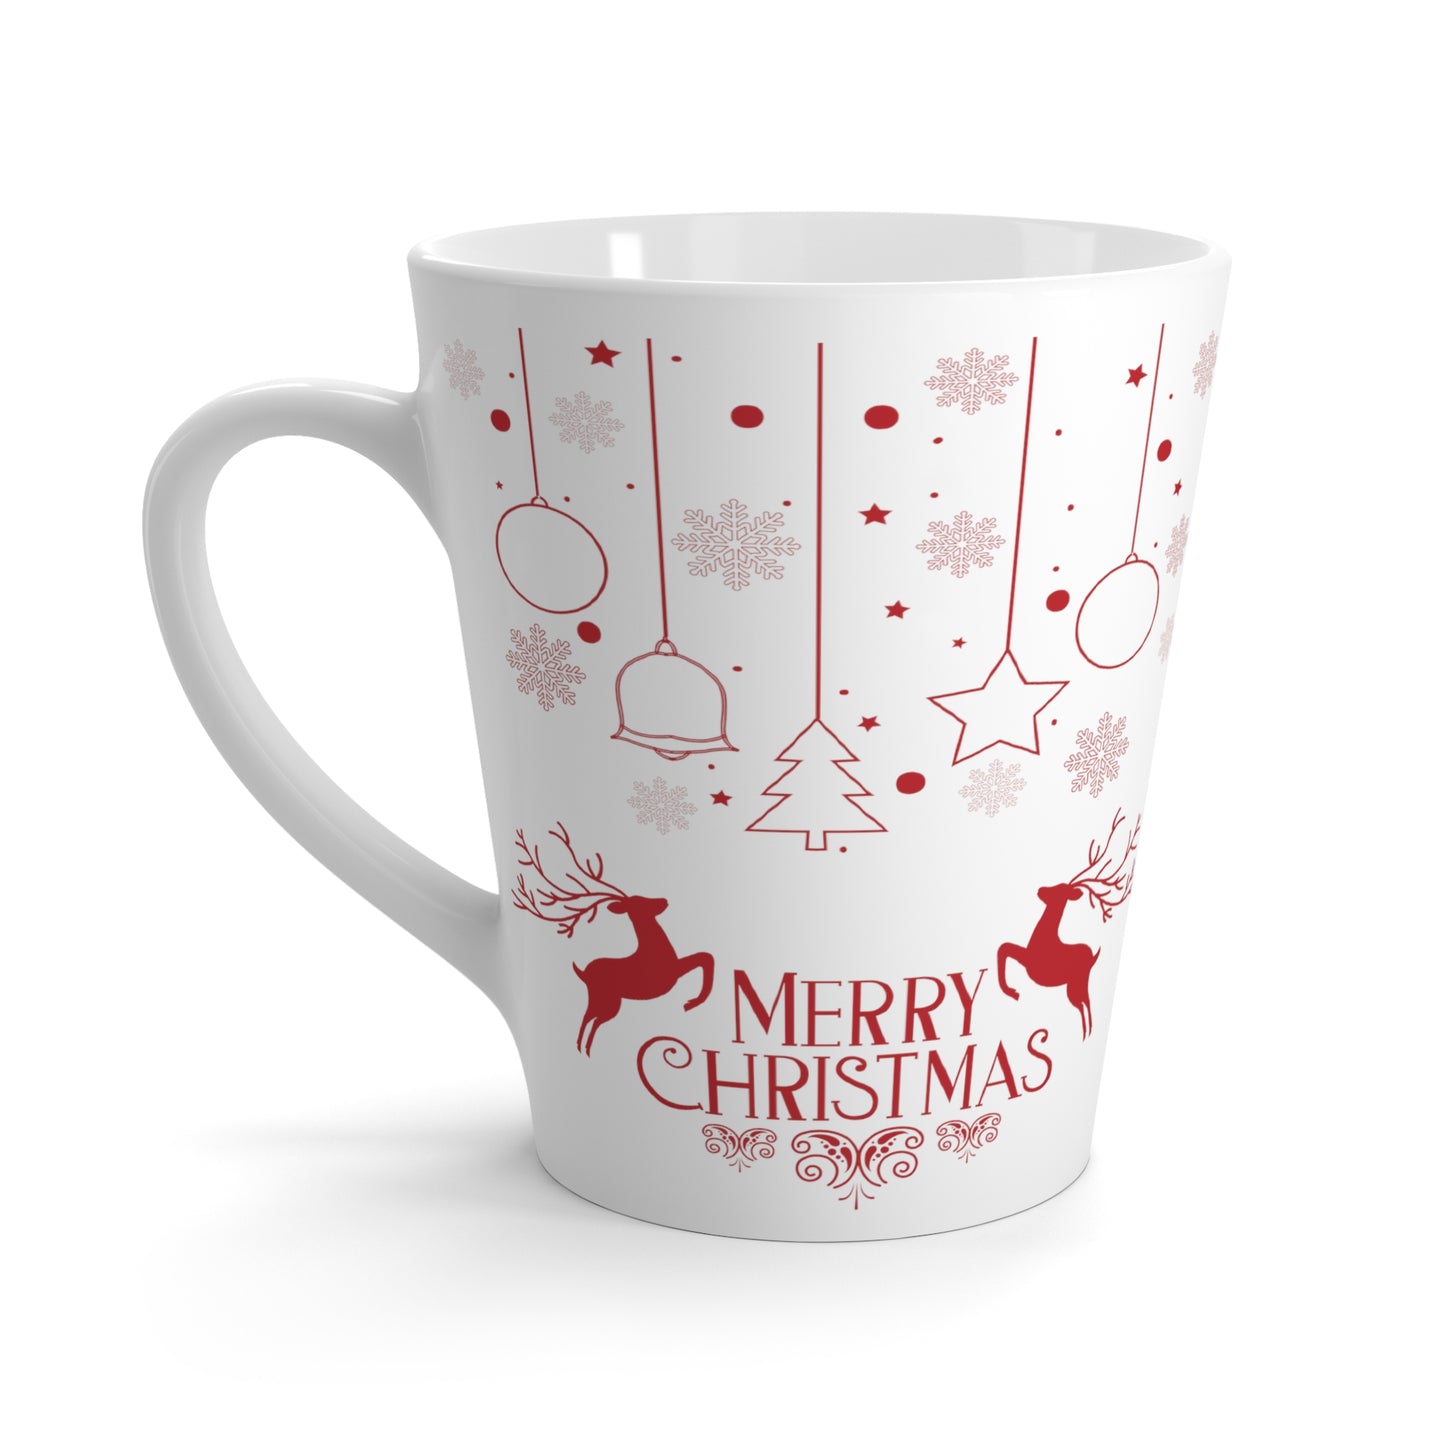 Merry Christmas Printed Lattee Mug, 12oz, Red